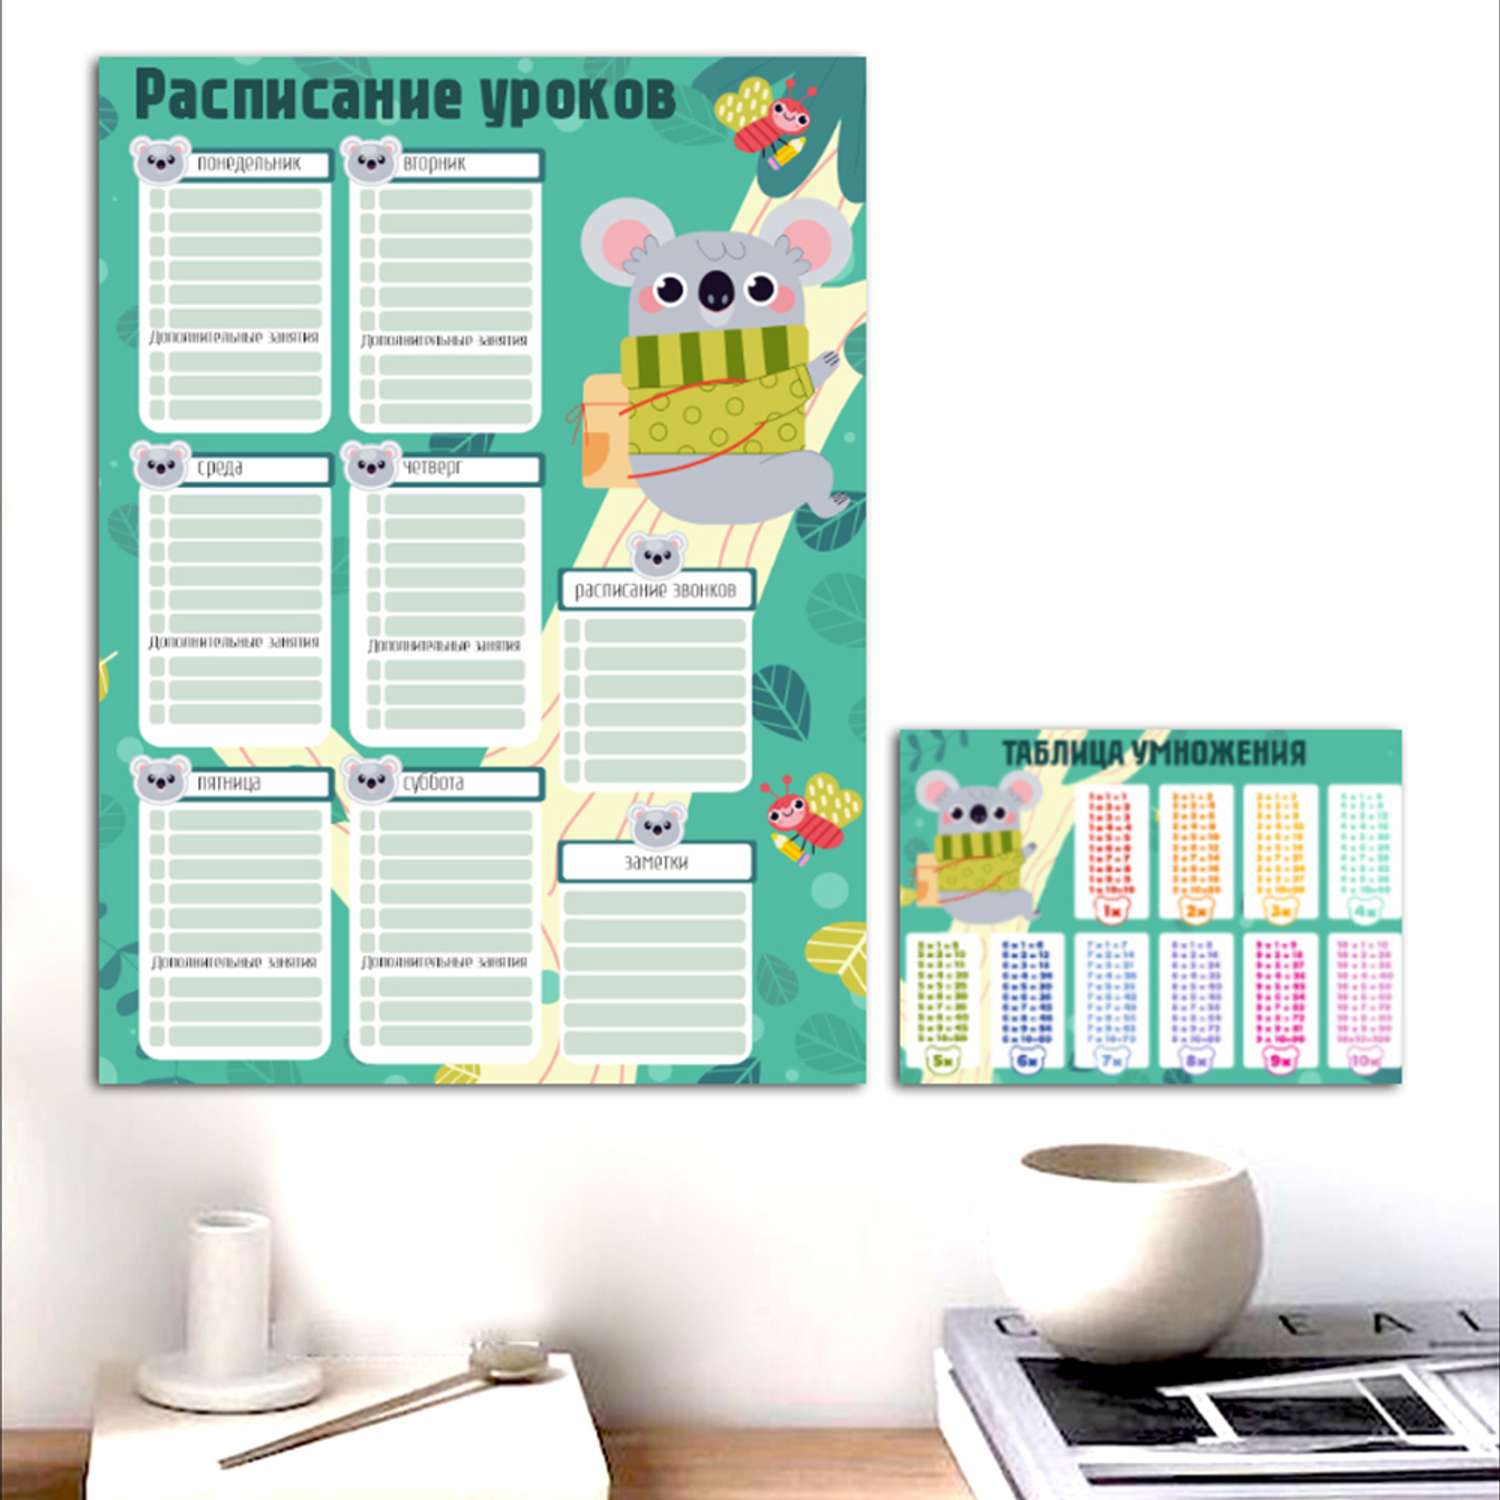 Комплект Woozzee Расписание уроков и таблица умножения коала - фото 1